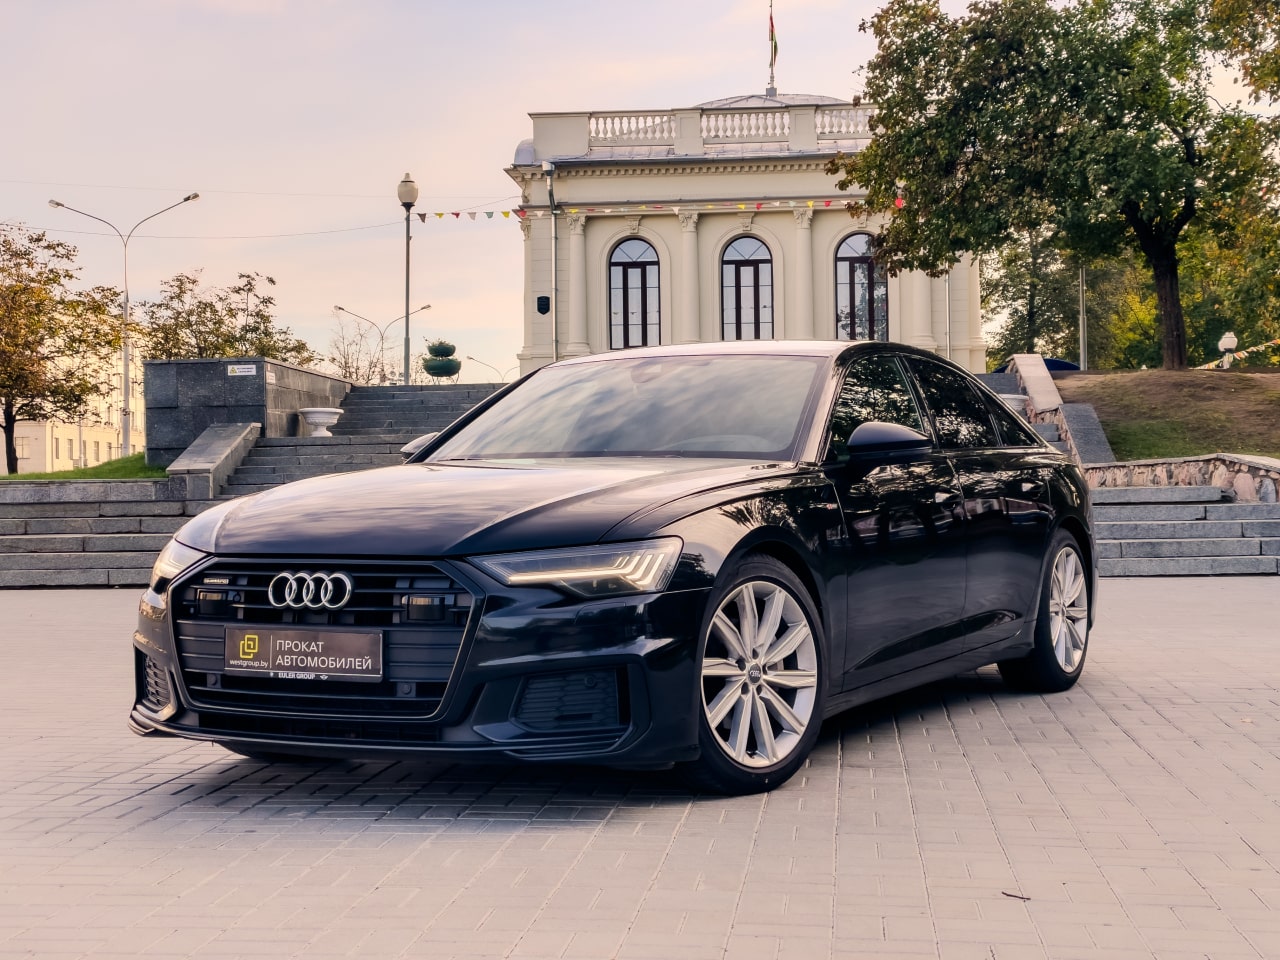 Аренда  Audi A6 C8 S-line Quattro  3 класса 2019-2023 года в городе Минск от 124 $/сутки,  двигатель: ДТ , объем 2.0 литров, КАСКО (Мультидрайв), без водителя, вид 1 - West Group